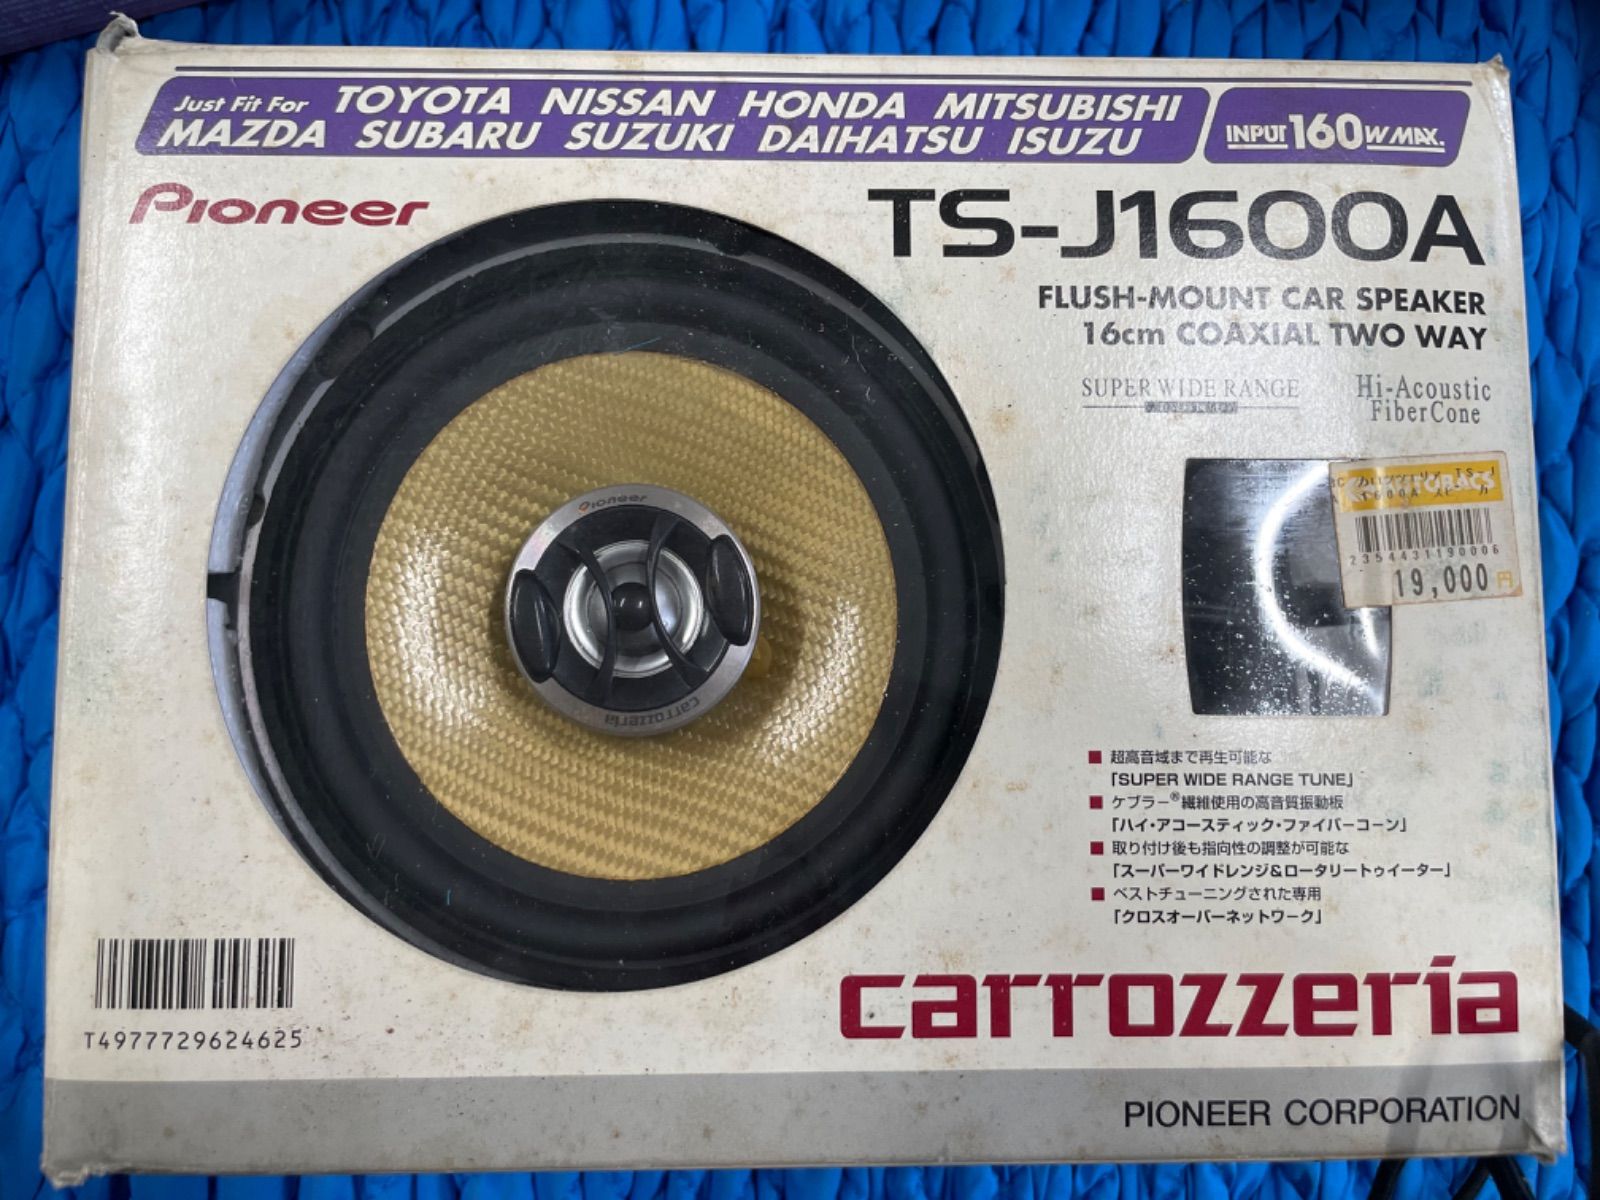 カースピーカー carrozzeria pioneer TS-J1600A | www.agb.md